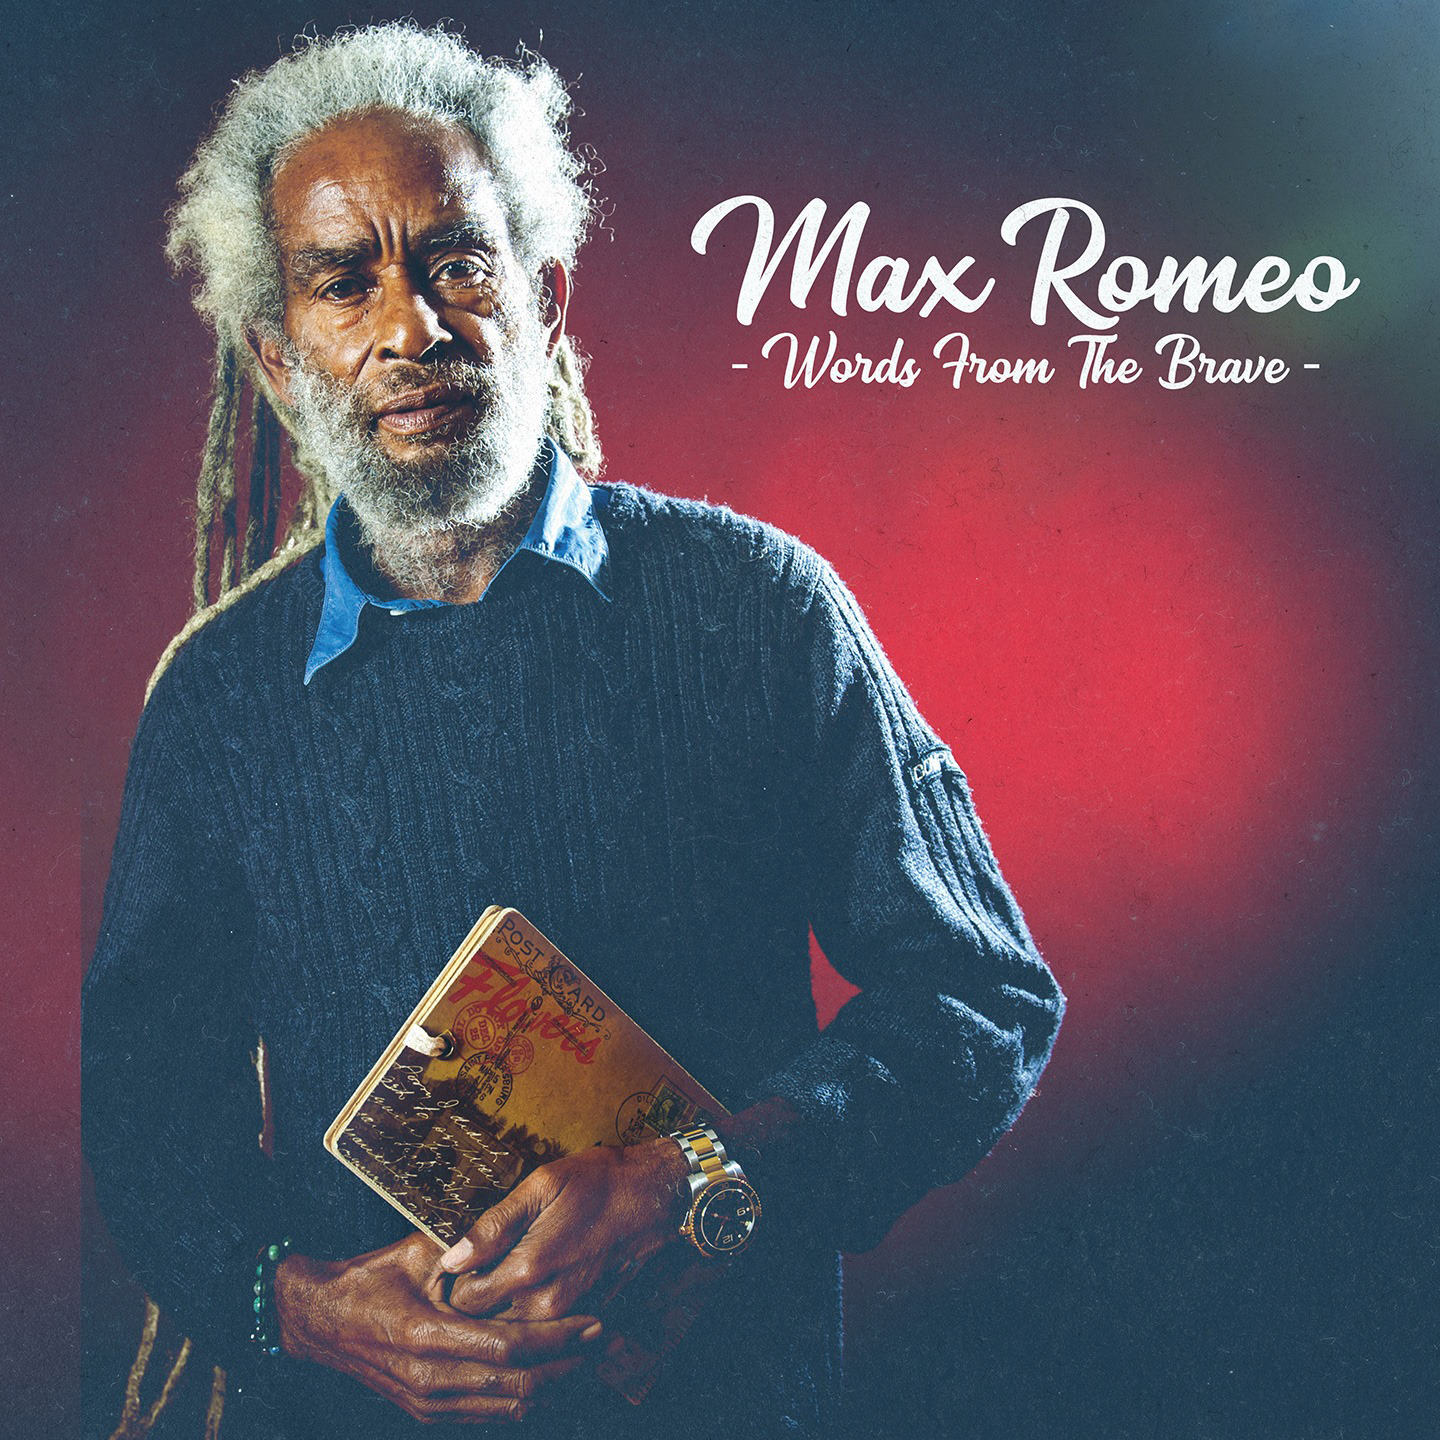 Cover de l'album de Max Romeo - Words from the Brave. Réalisé par Loseou